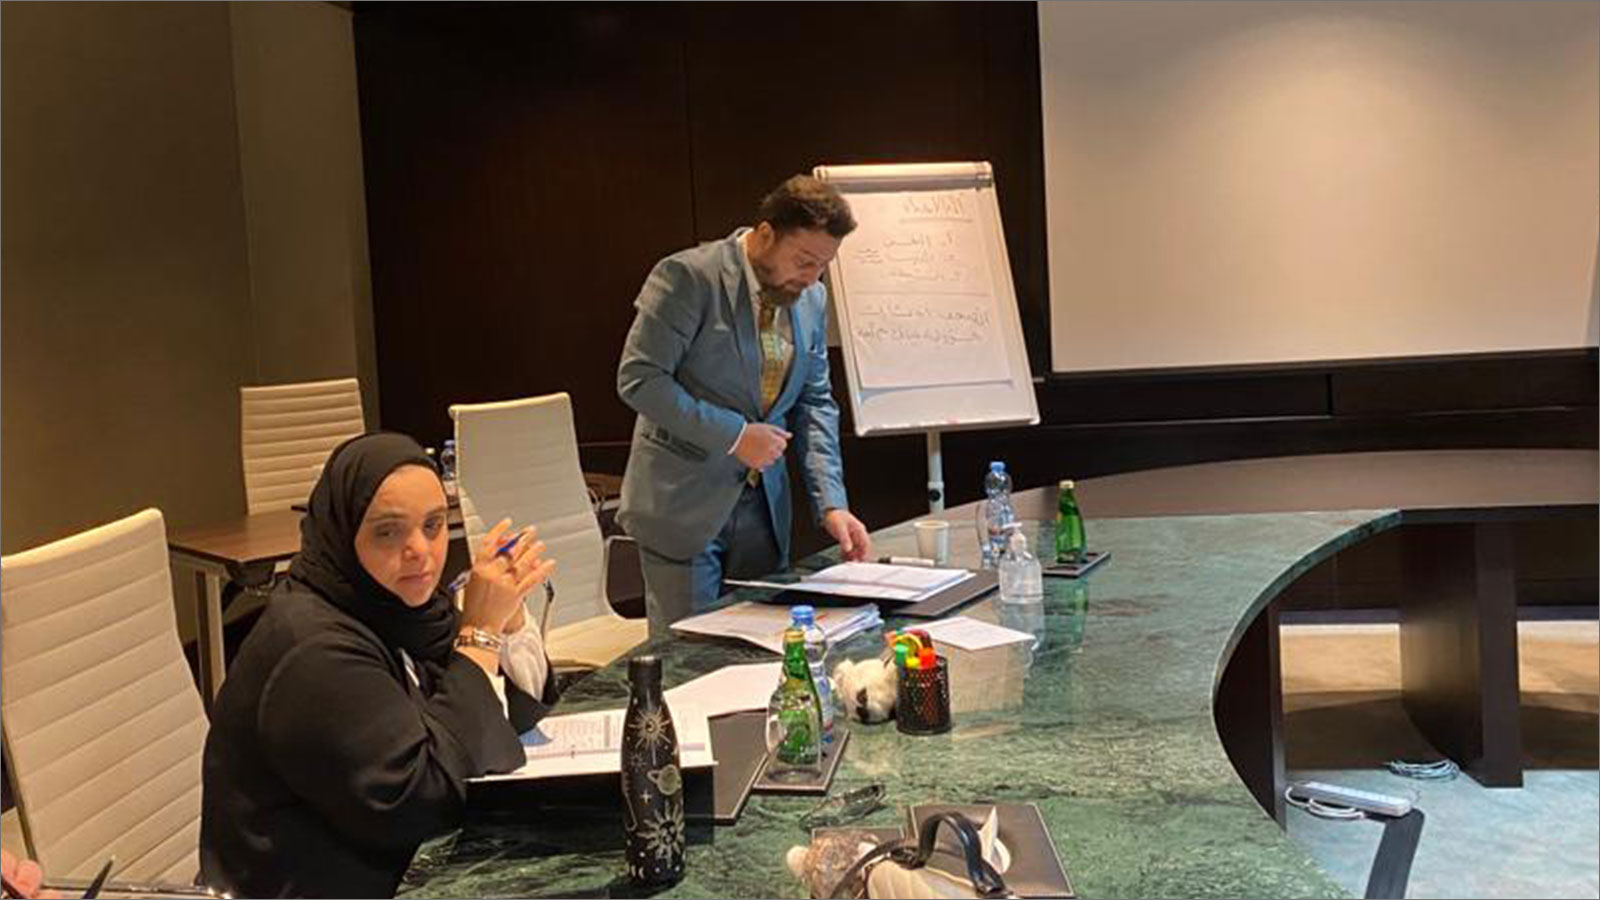 الدكتور محمد خلال تقديم الشرح في أثناء الحدث التدريبي